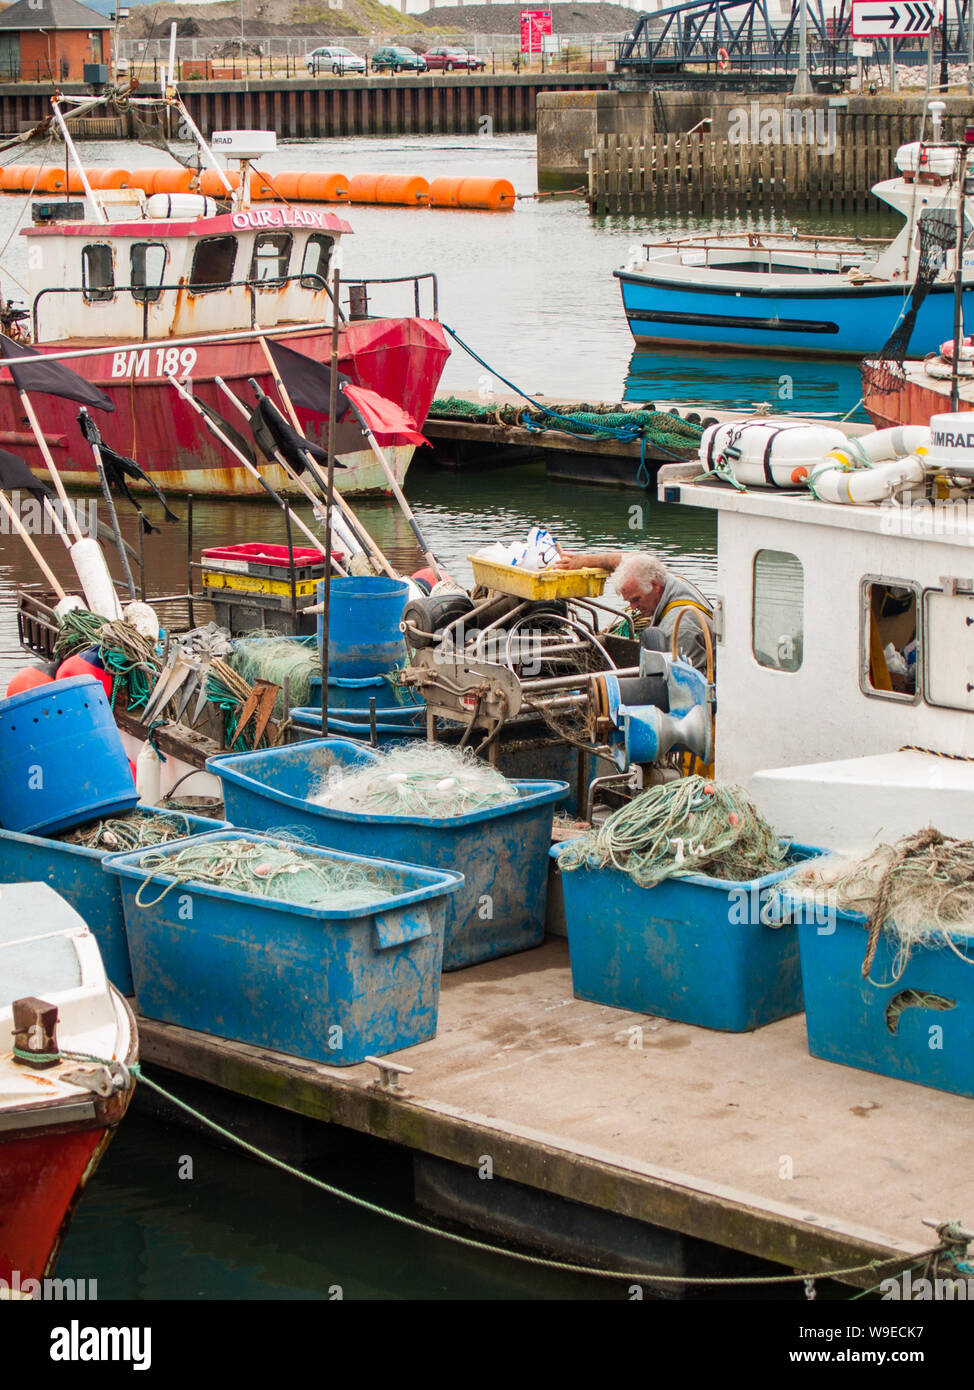 Port de plaisance de Swansea. Les bateaux de pêche sont amarrés au quai. L'équipement de pêche et des filets sont sur le quai. Un pêcheur est de travailler sur son bateau. Pays de Galles, Royaume-Uni. Banque D'Images